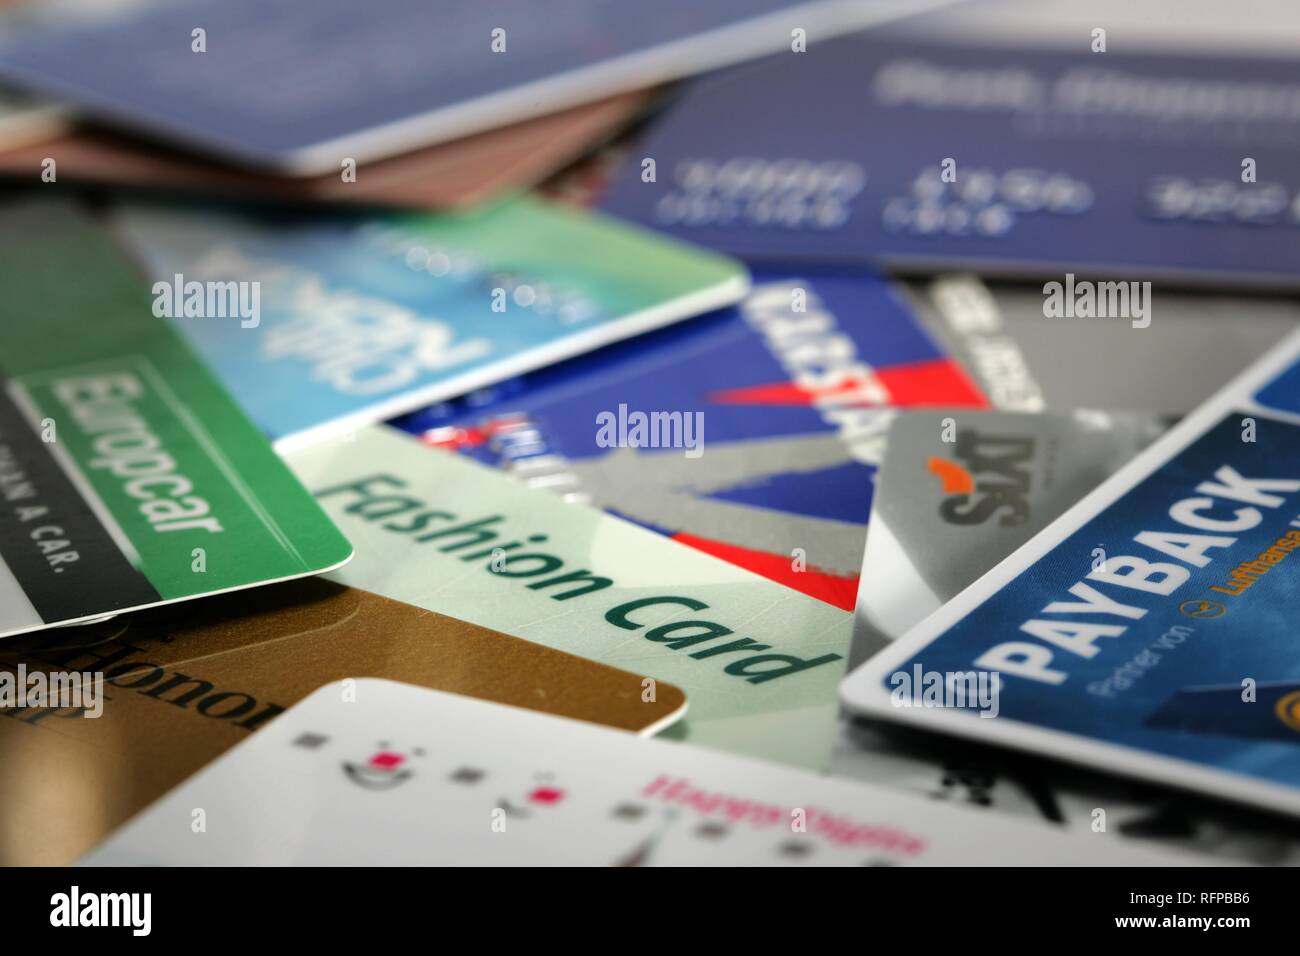 DEU, Allemagne : les cartes bonus, cartes de réduction de plusieurs compagnies. Banque D'Images